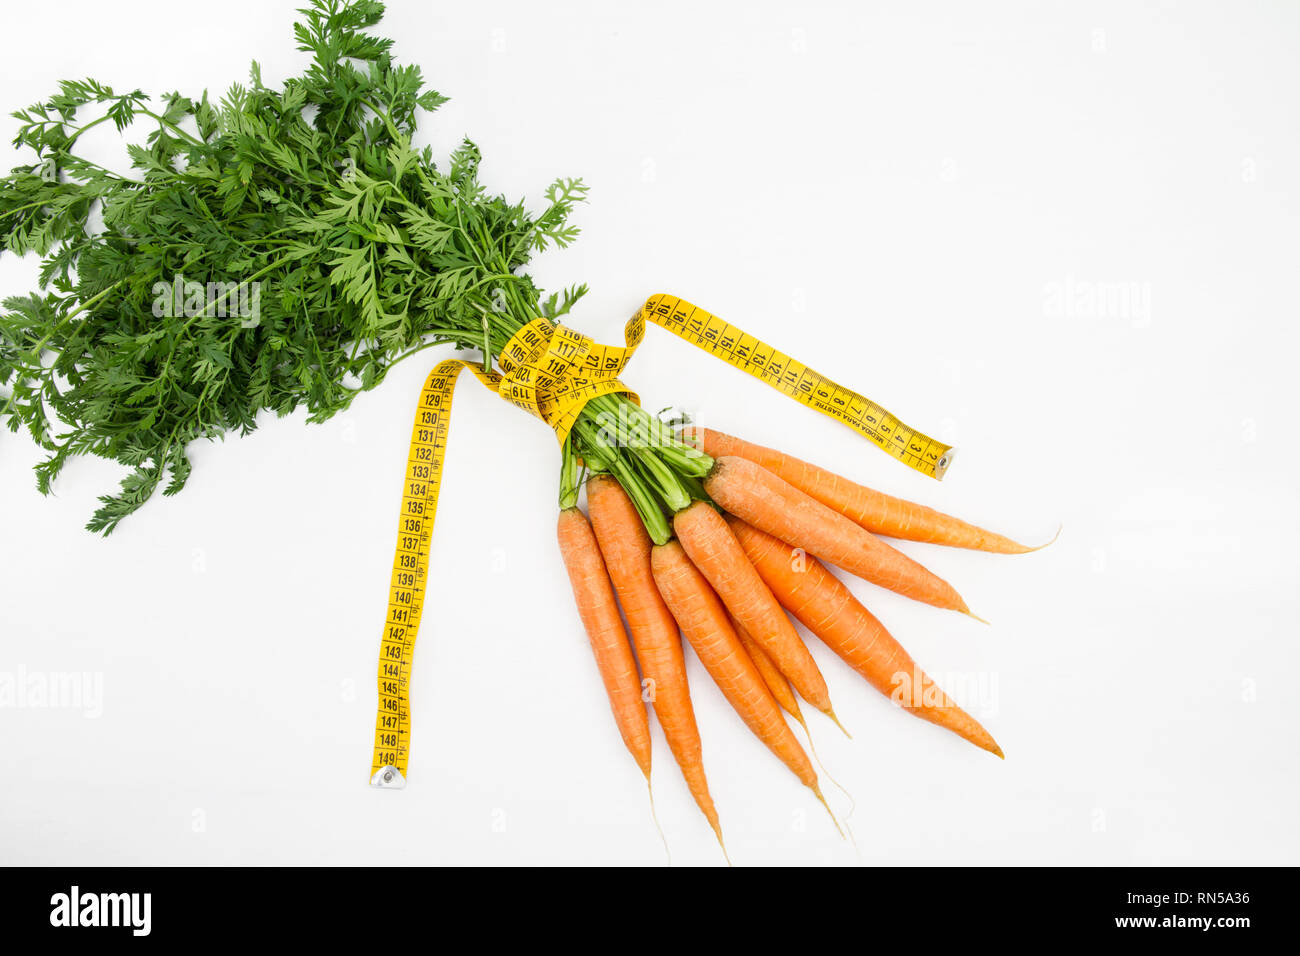 Vegetarische Ernährung, Gewicht zu reduzieren. Ein Haufen frisch gepflückte Karotten in einem Körper Maßband Herrscher, die Bordkante symbolisiert gewickelt Stockfoto